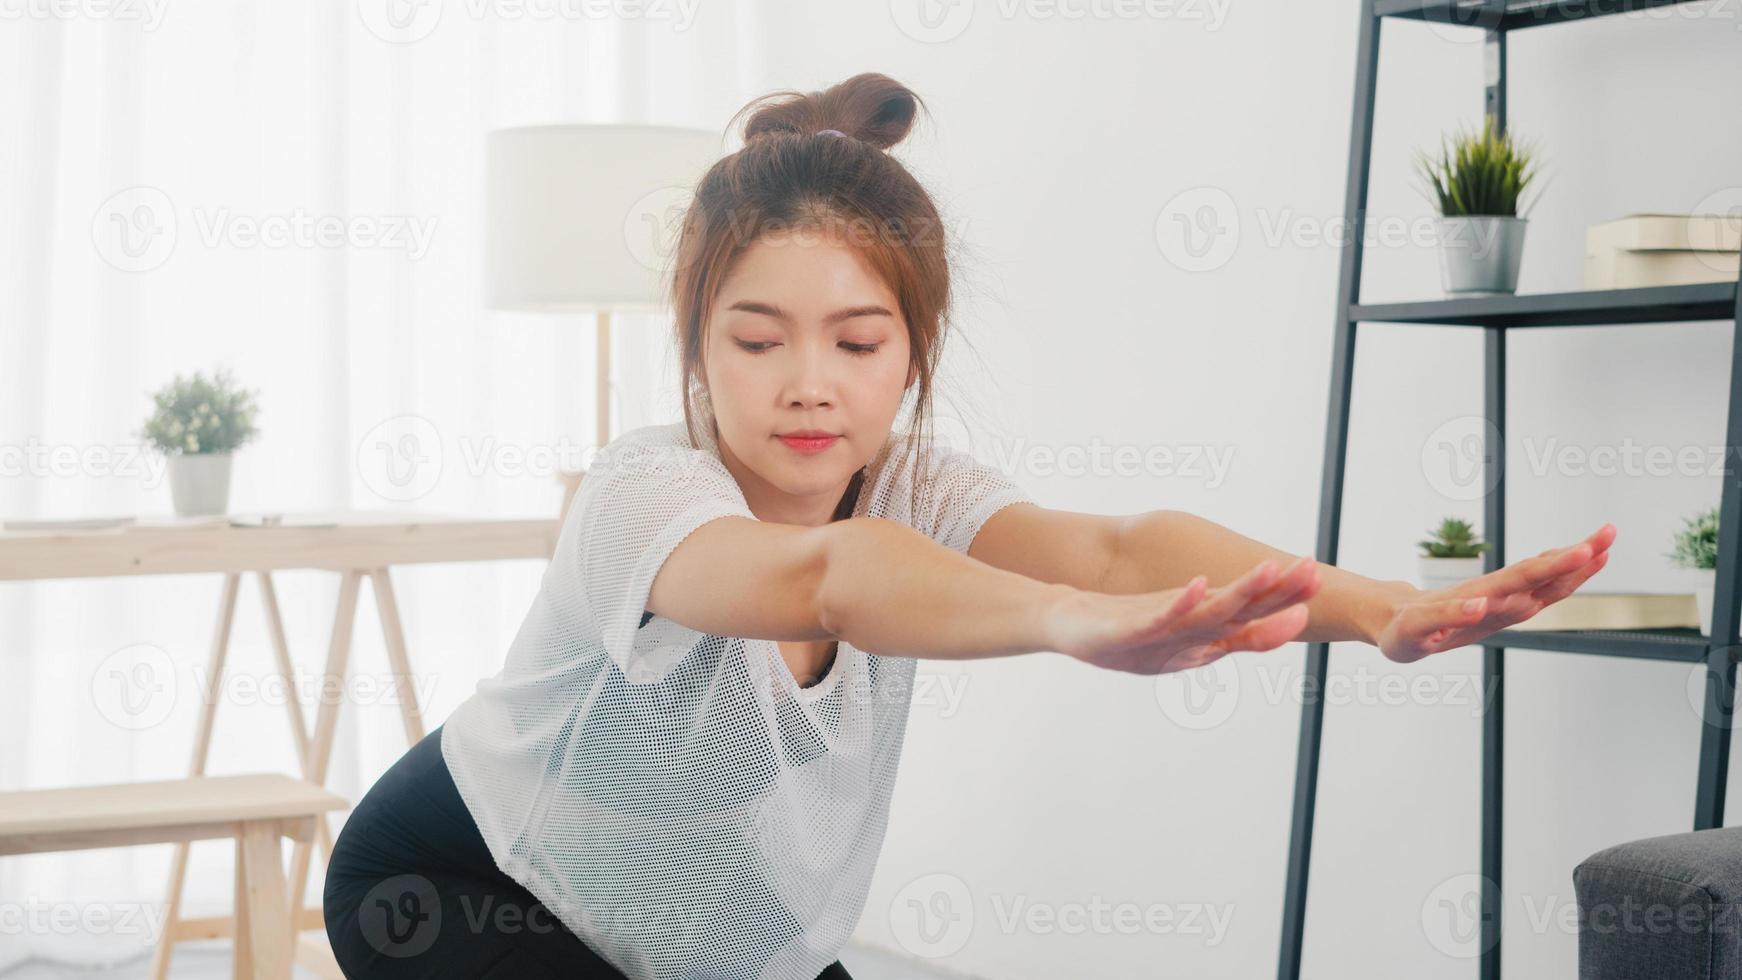 jonge Koreaanse dame in sportkledingoefeningen die aan het trainen zijn en laptop gebruiken om thuis yoga-videotutorials te bekijken. afstandstraining met personal trainer, sociale afstand, online onderwijsconcept. foto